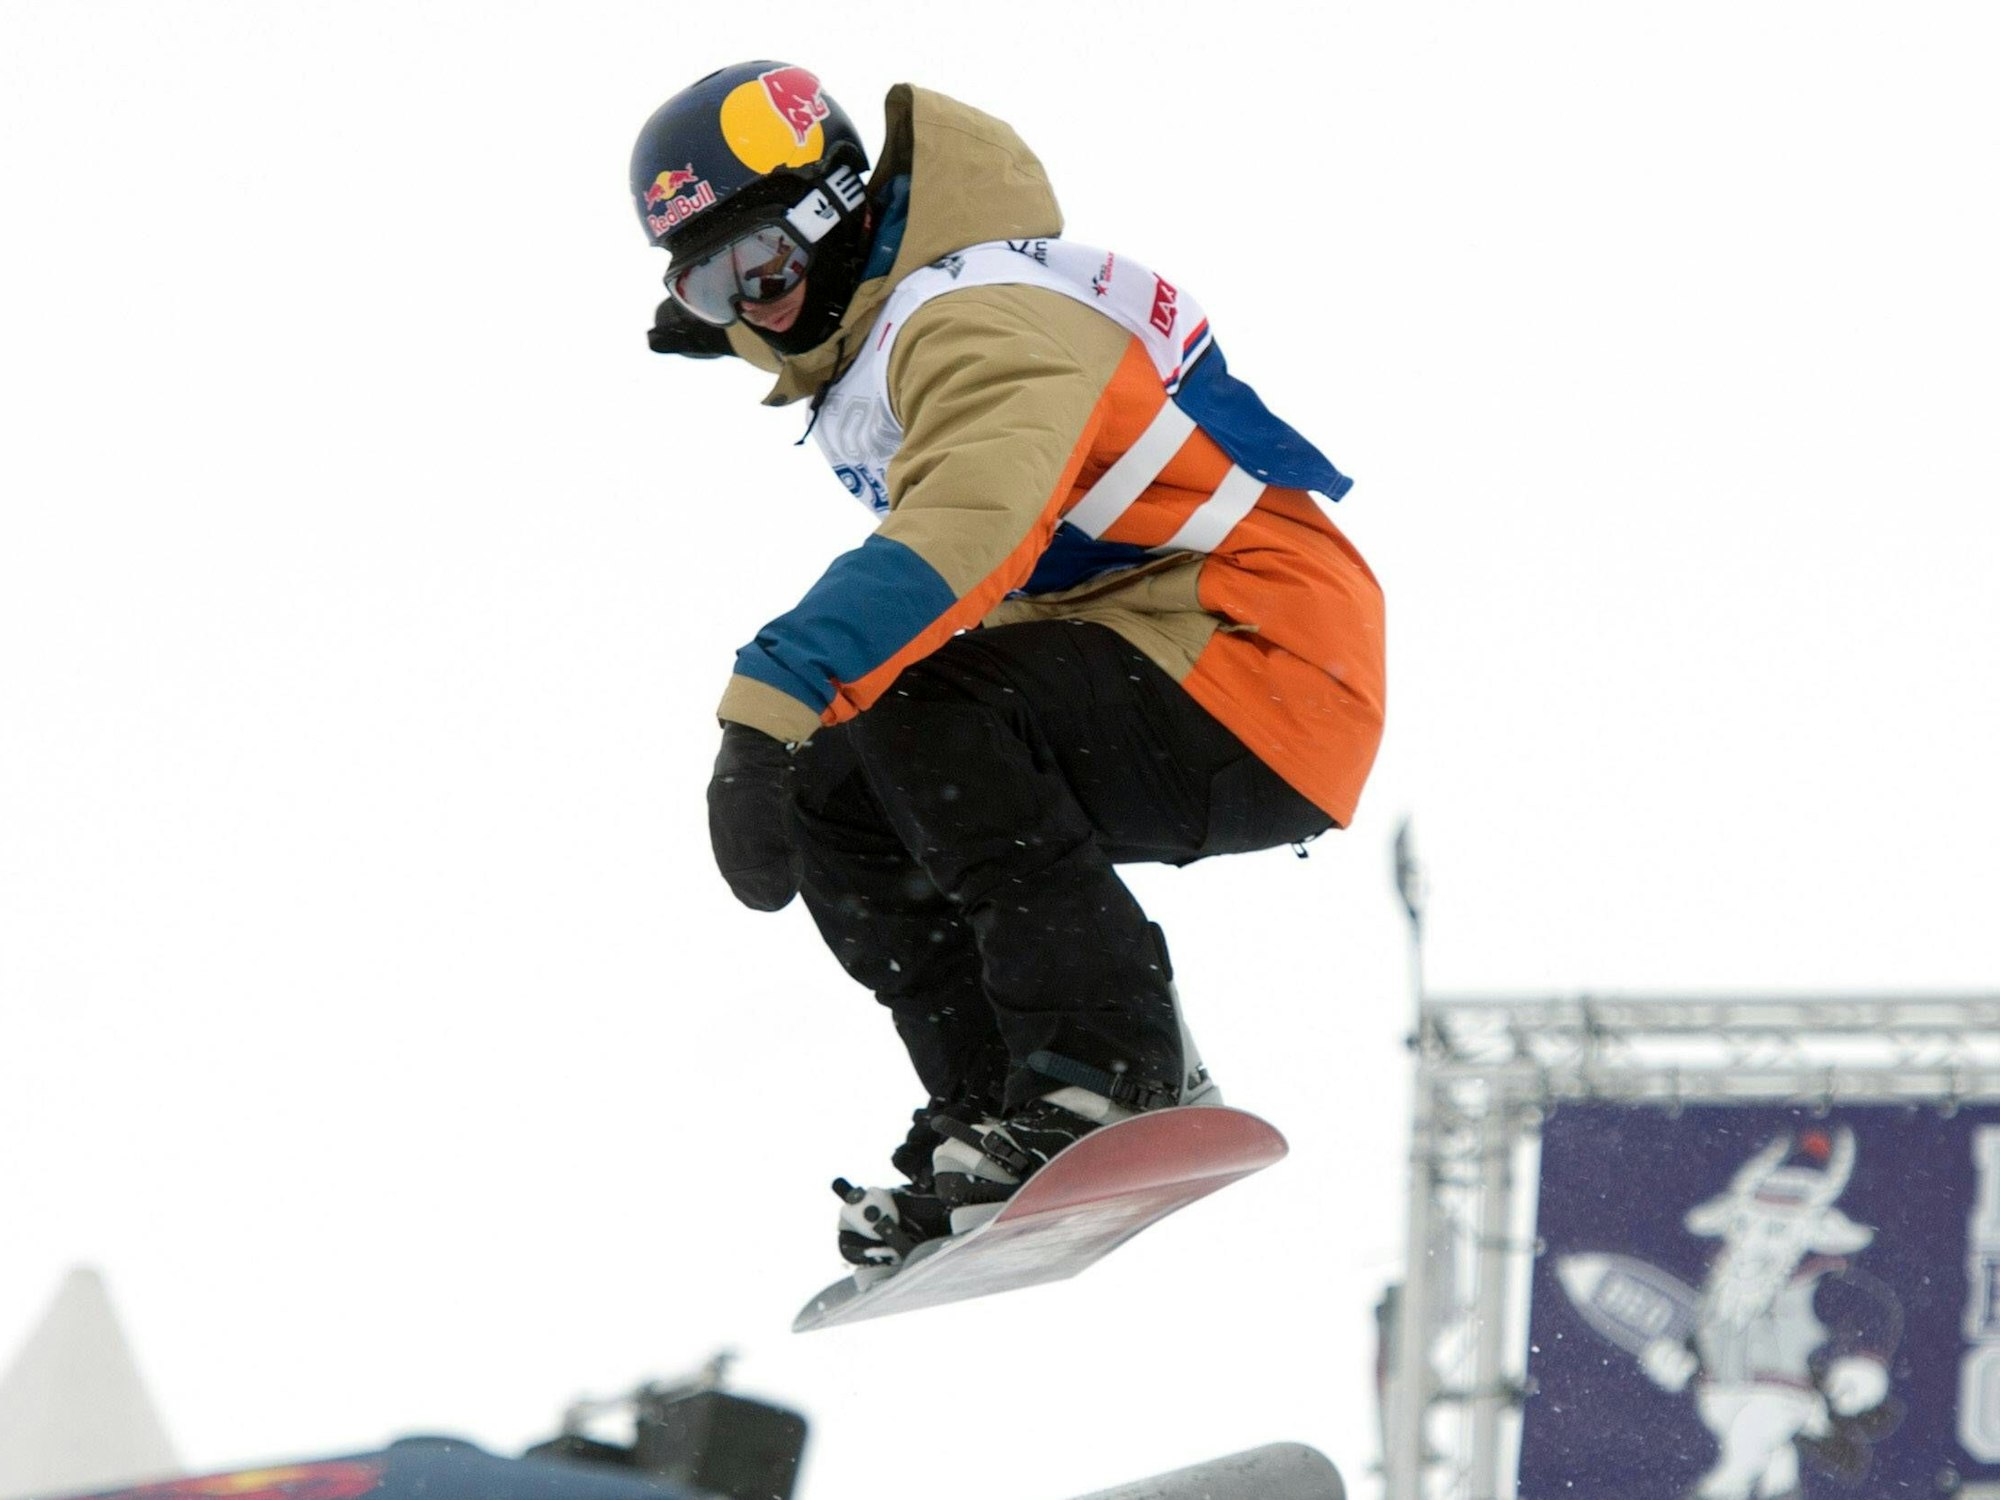 Marko Grilc springt mit seinem Snowboard über eine Schanze.